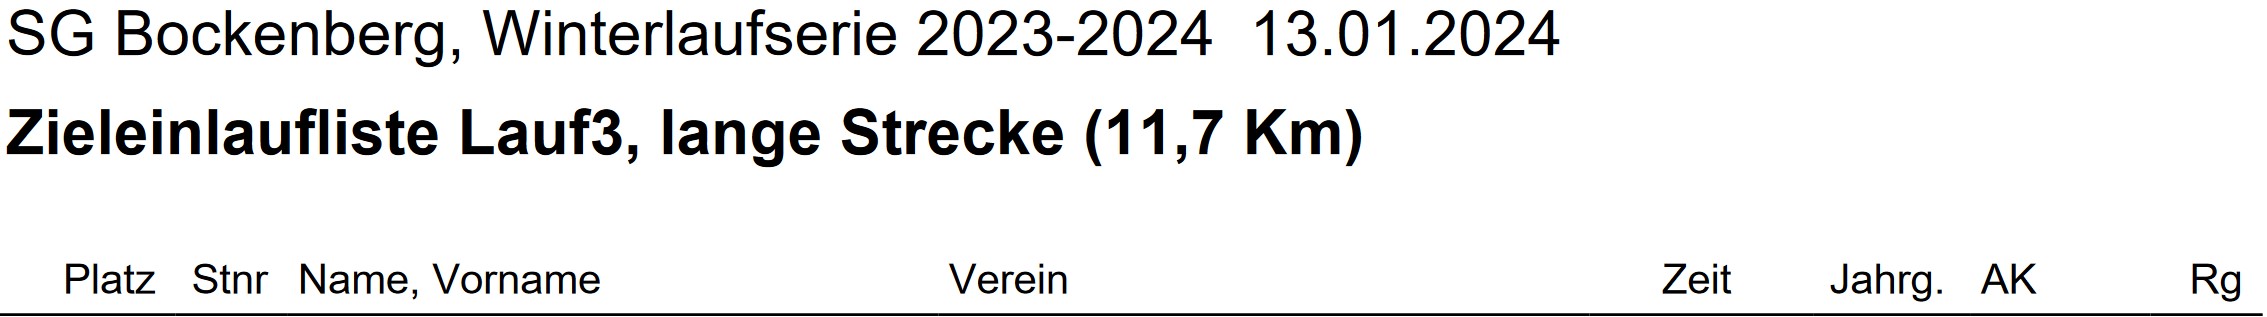 Bockenberg 2023 2024 3. Lauf Ergebnisse Teil 1